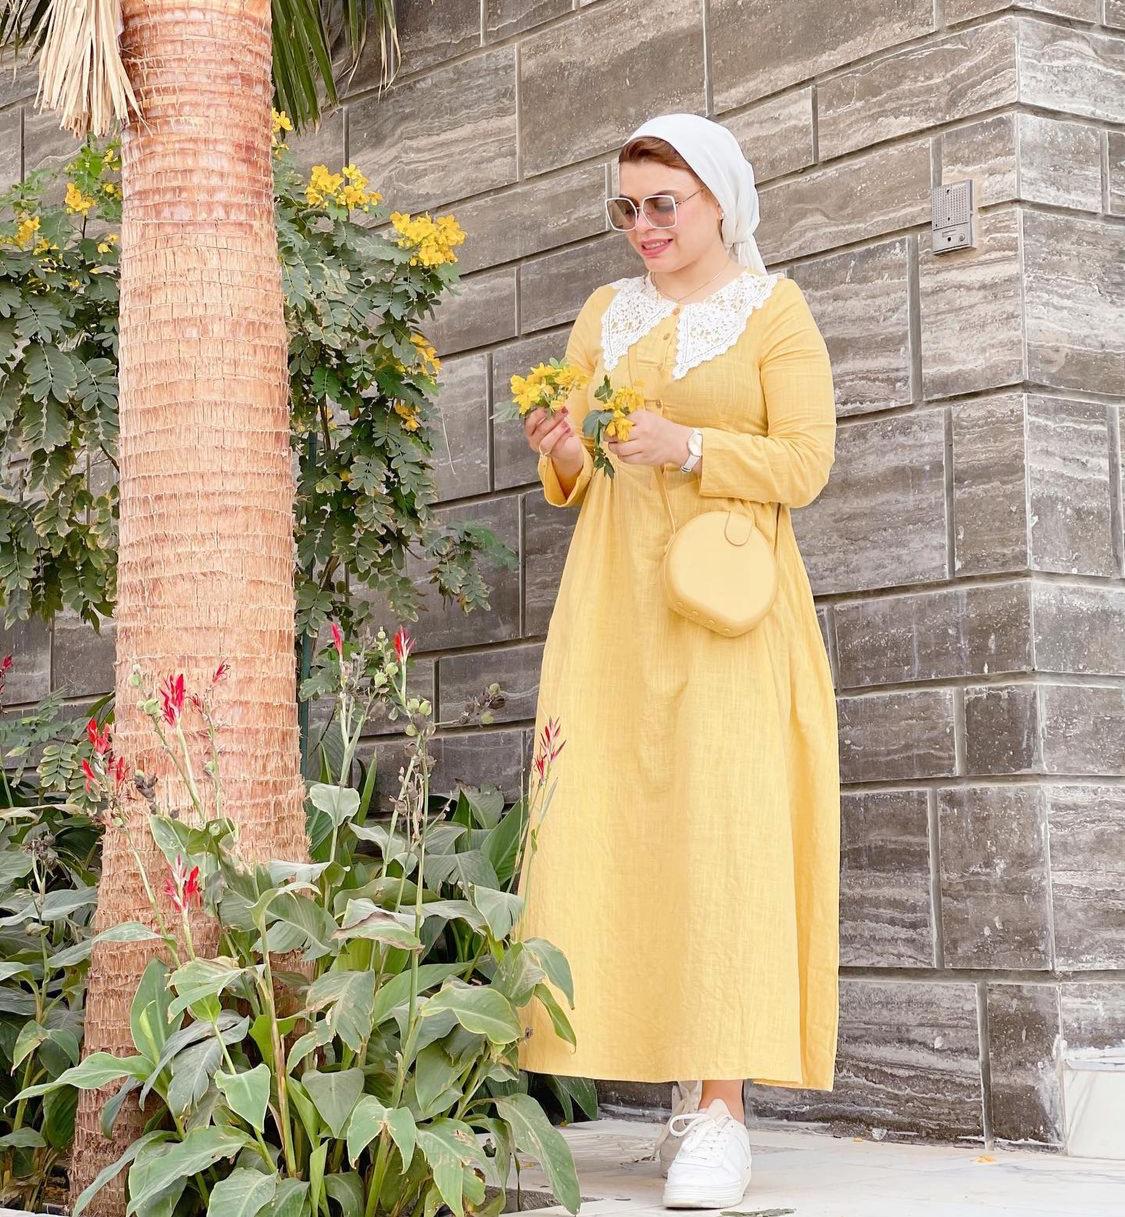  نسمة الجوهري بفستان اصفر كلاسيكي -الصورة من حسابها على الانستغرام